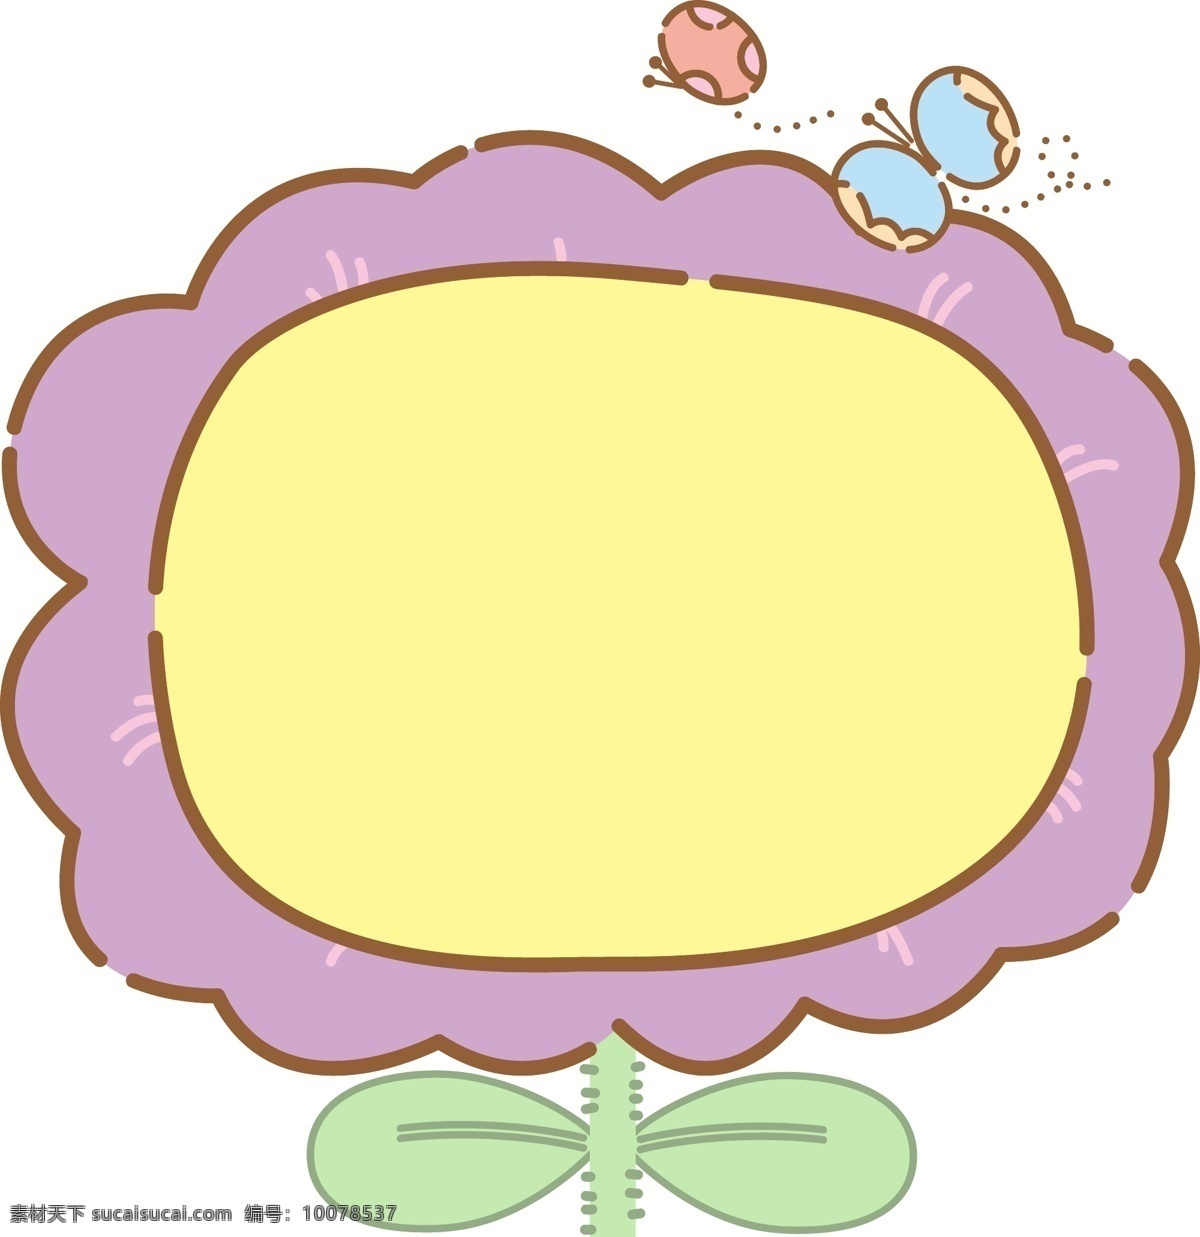 花朵 框框 卡通 插画 花朵的框框 卡通插画 边框插画 边框 框架 框子 简易边框 紫色的框框